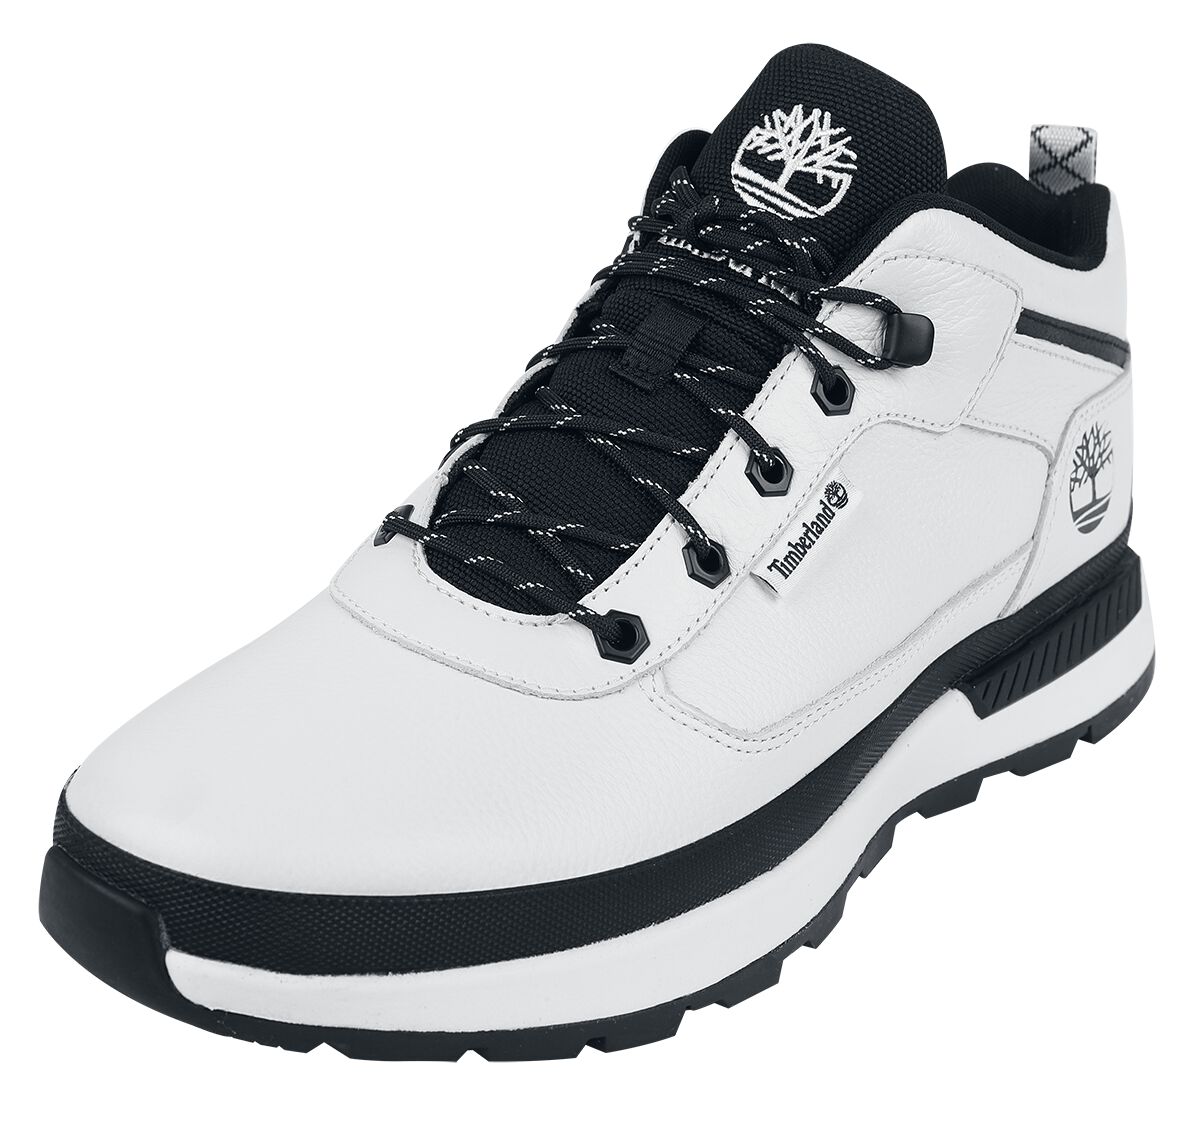 Timberland Sneaker - Field Trekker Mid Lace Up - EU41 bis EU46 - für Männer - Größe EU46 - weiß